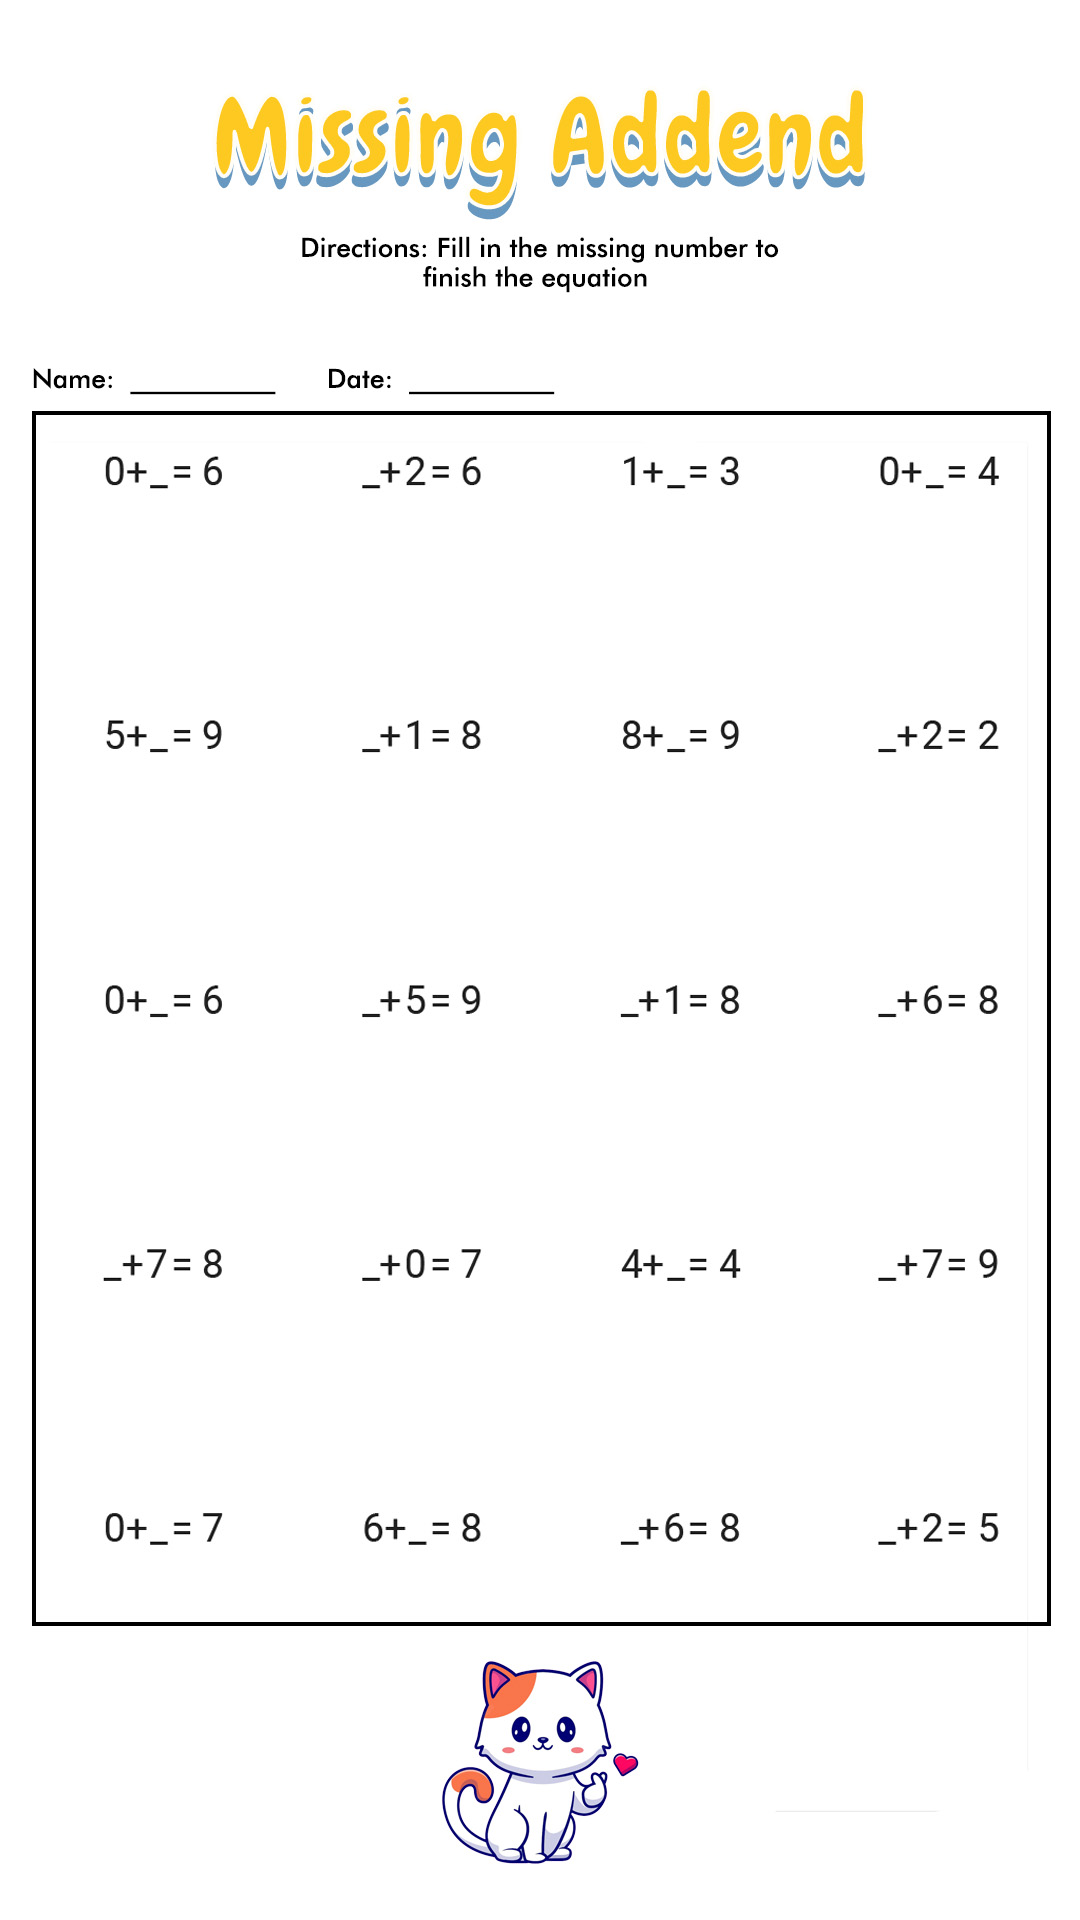 Missing Number Addition Worksheets First Grade Image